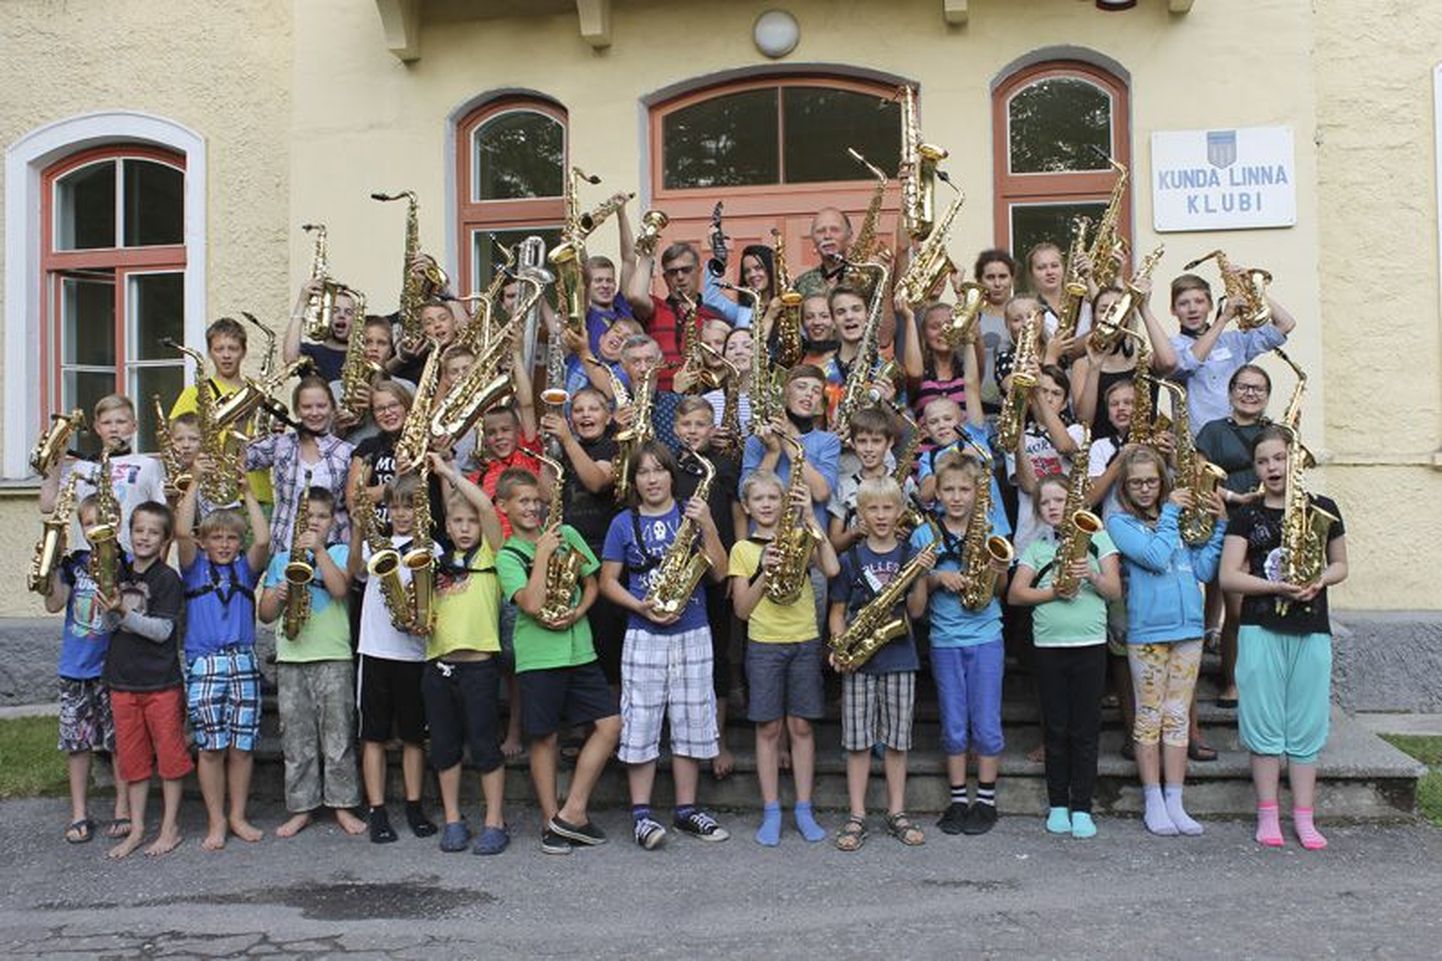 Kunda linna toimuvas üleriigilises saksofonistide suvekoolis harjutab poolsada saksofoniõppijat ja -harrastajat